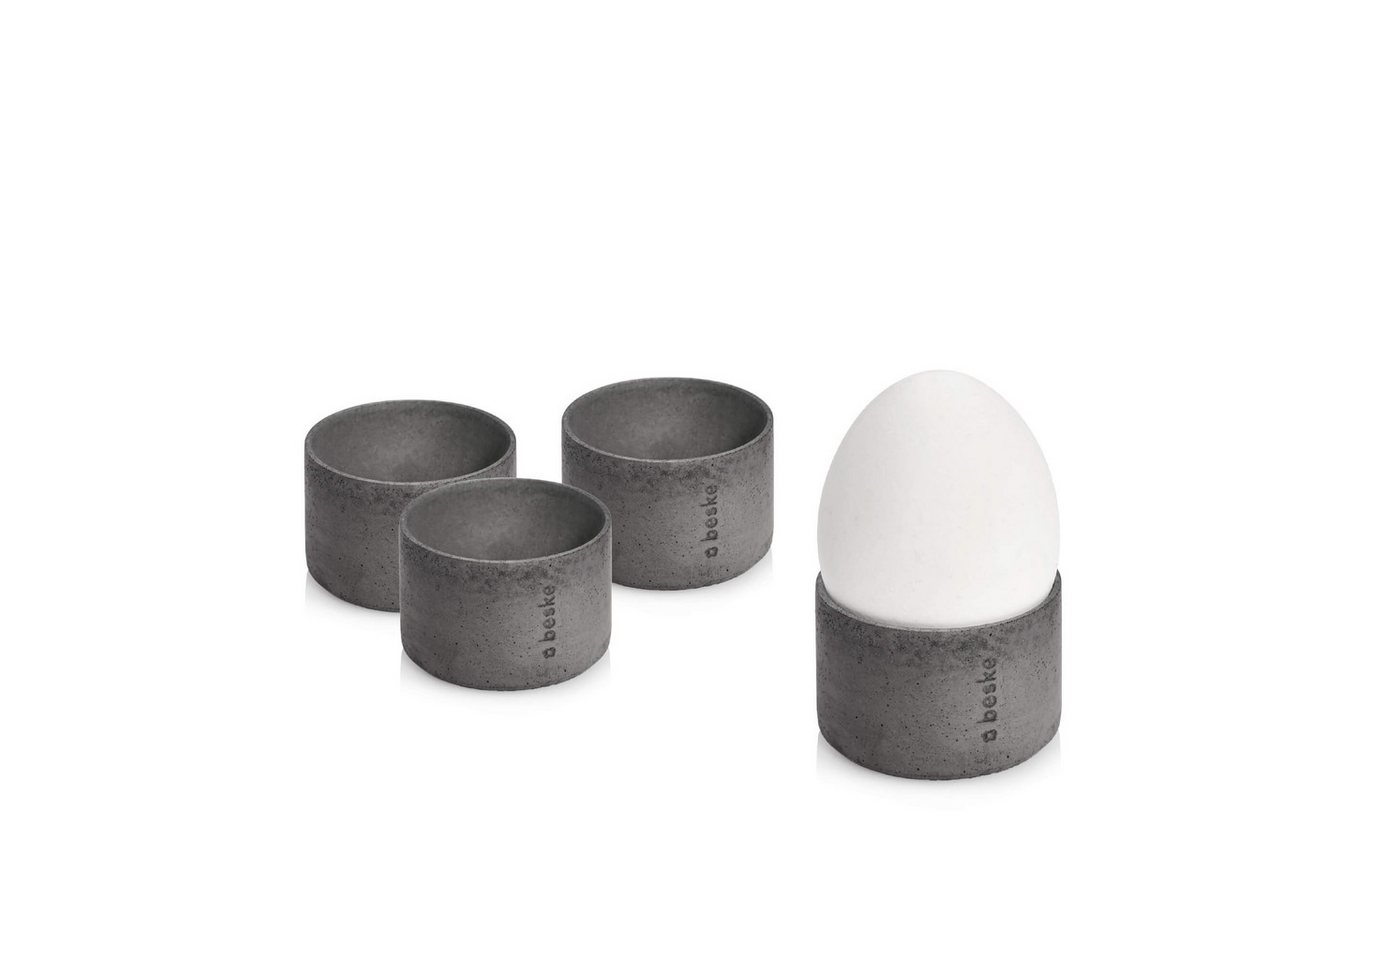 beske Eierbecher aus Beton - 4 er Set! Unterschiedliche Größen und Farben., Minimalistisches Eierbecherset von beske